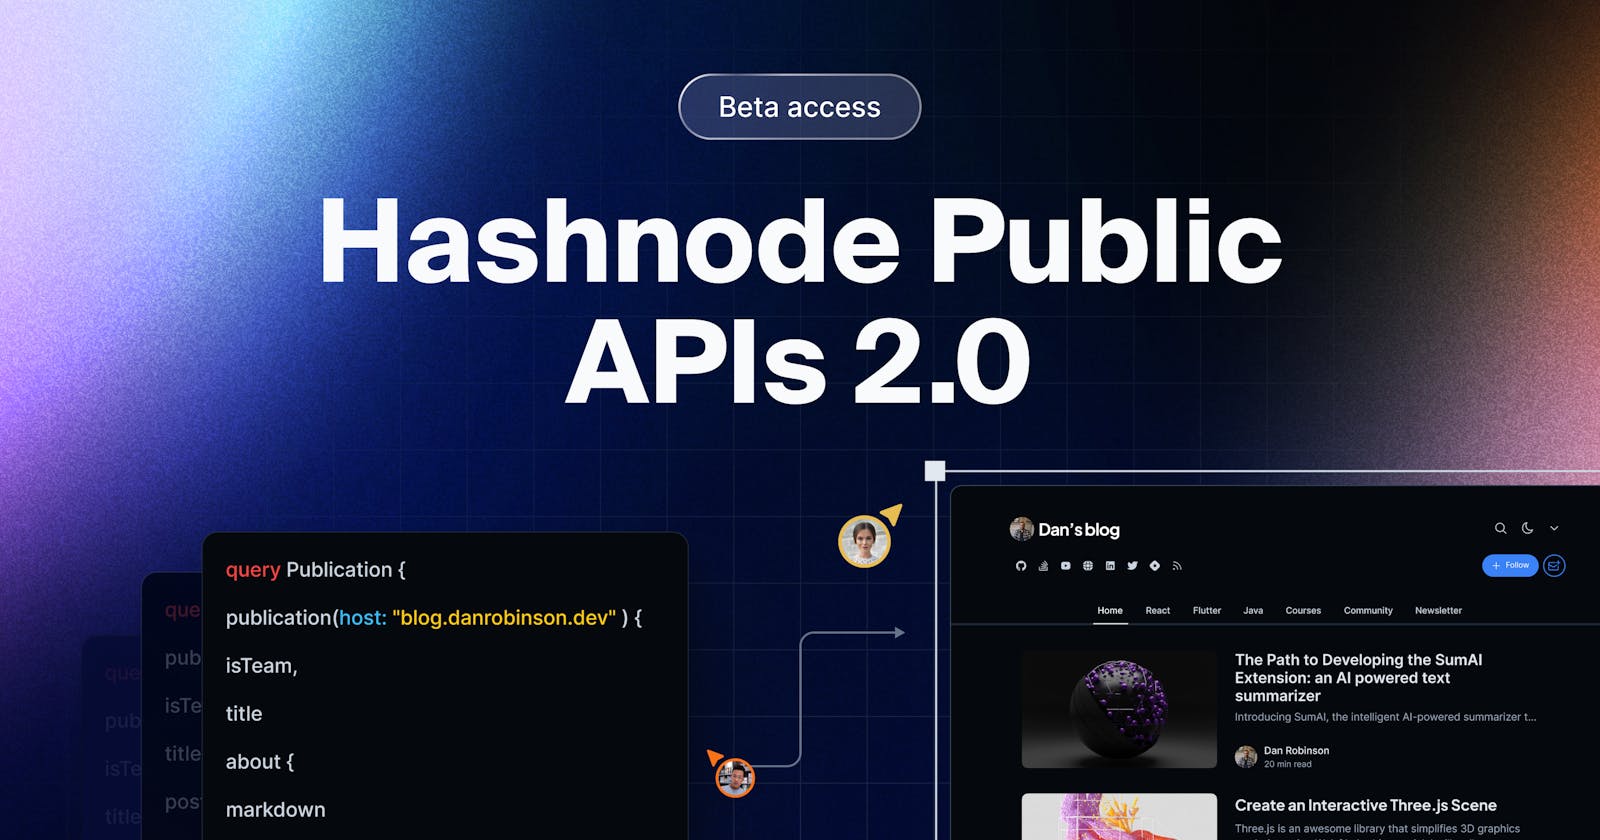 Announcing Hashnode Public APIs 2.0 closed beta